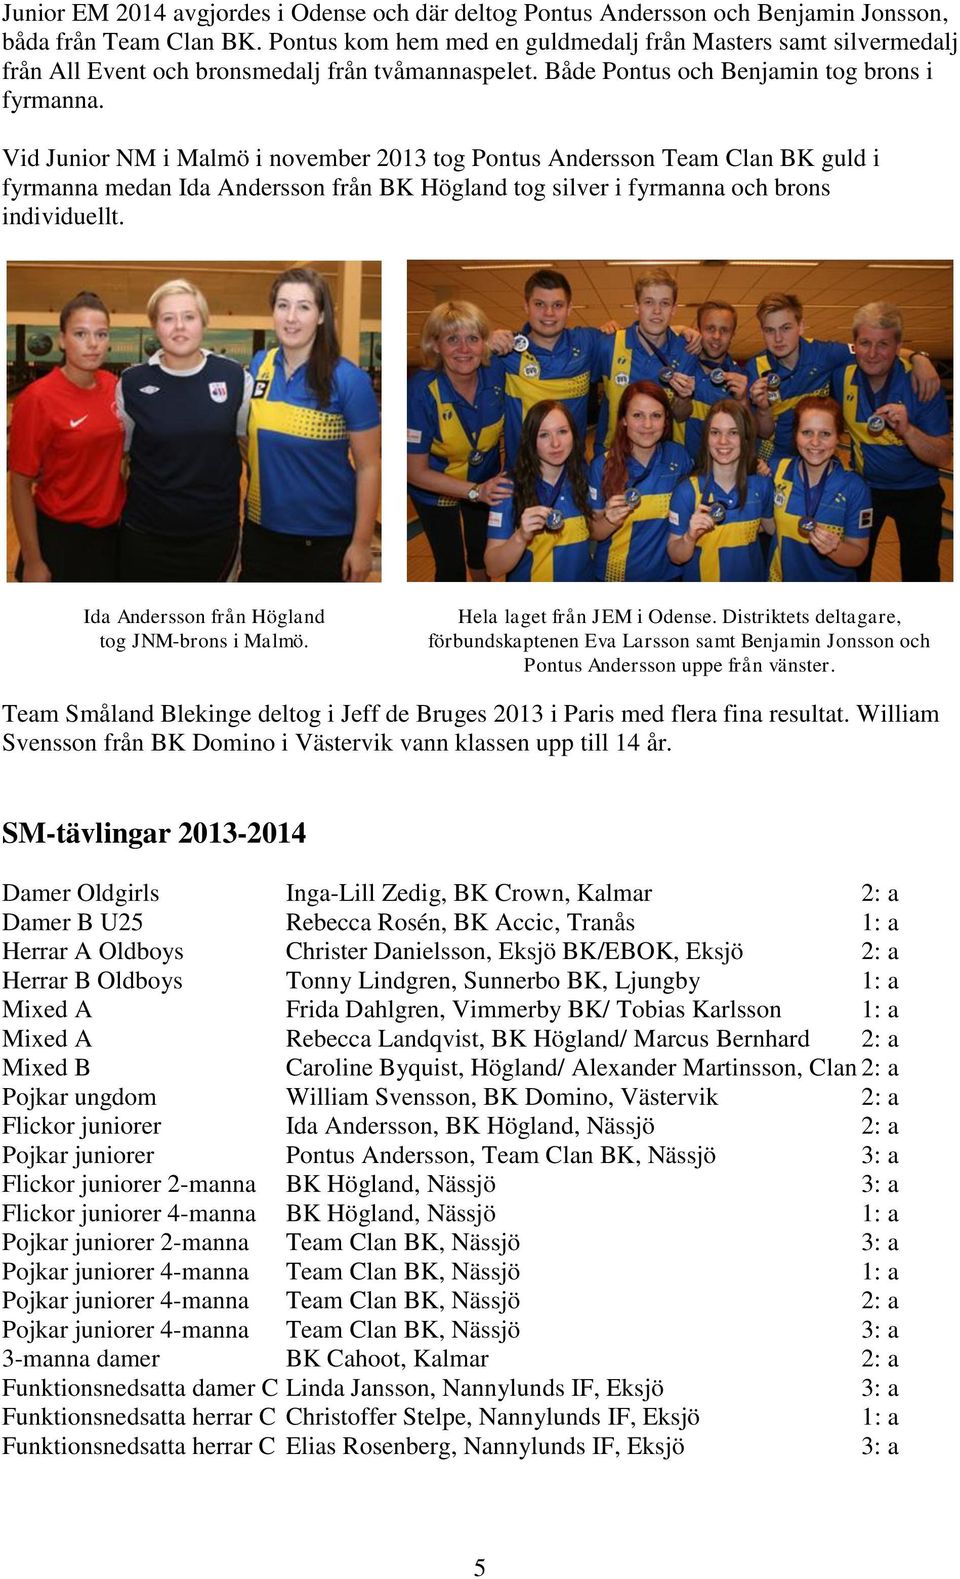 Vid Junior NM i Malmö i november 2013 tog Pontus Andersson Team Clan BK guld i fyrmanna medan Ida Andersson från BK Högland tog silver i fyrmanna och brons individuellt.